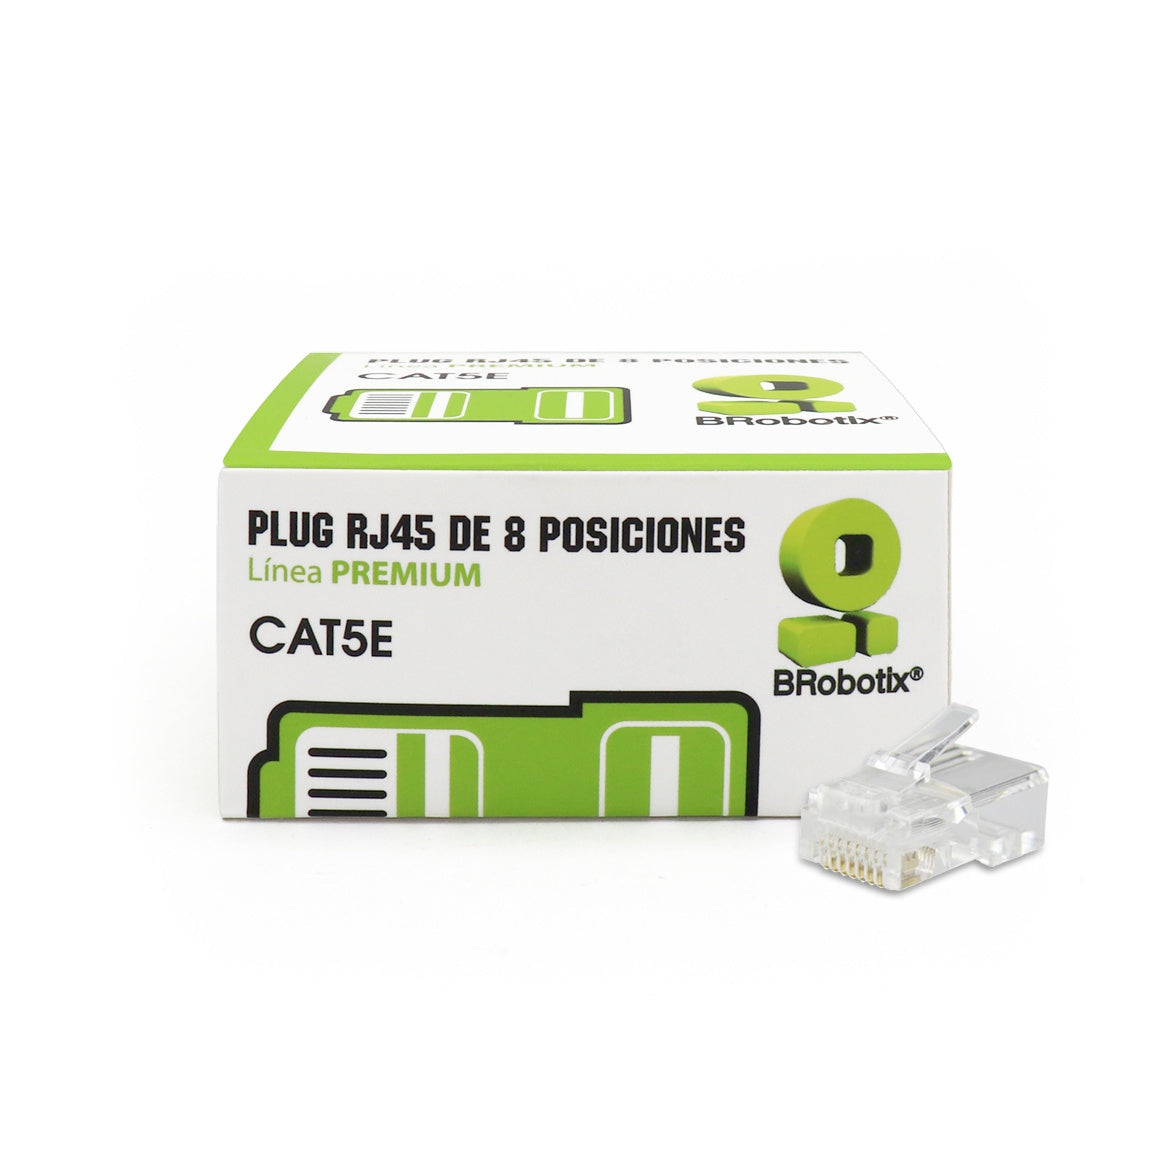 Plug Rj45 Cat5E 8 Posiciones Caja Con 25 Pi Brobotix 445418 Transparente